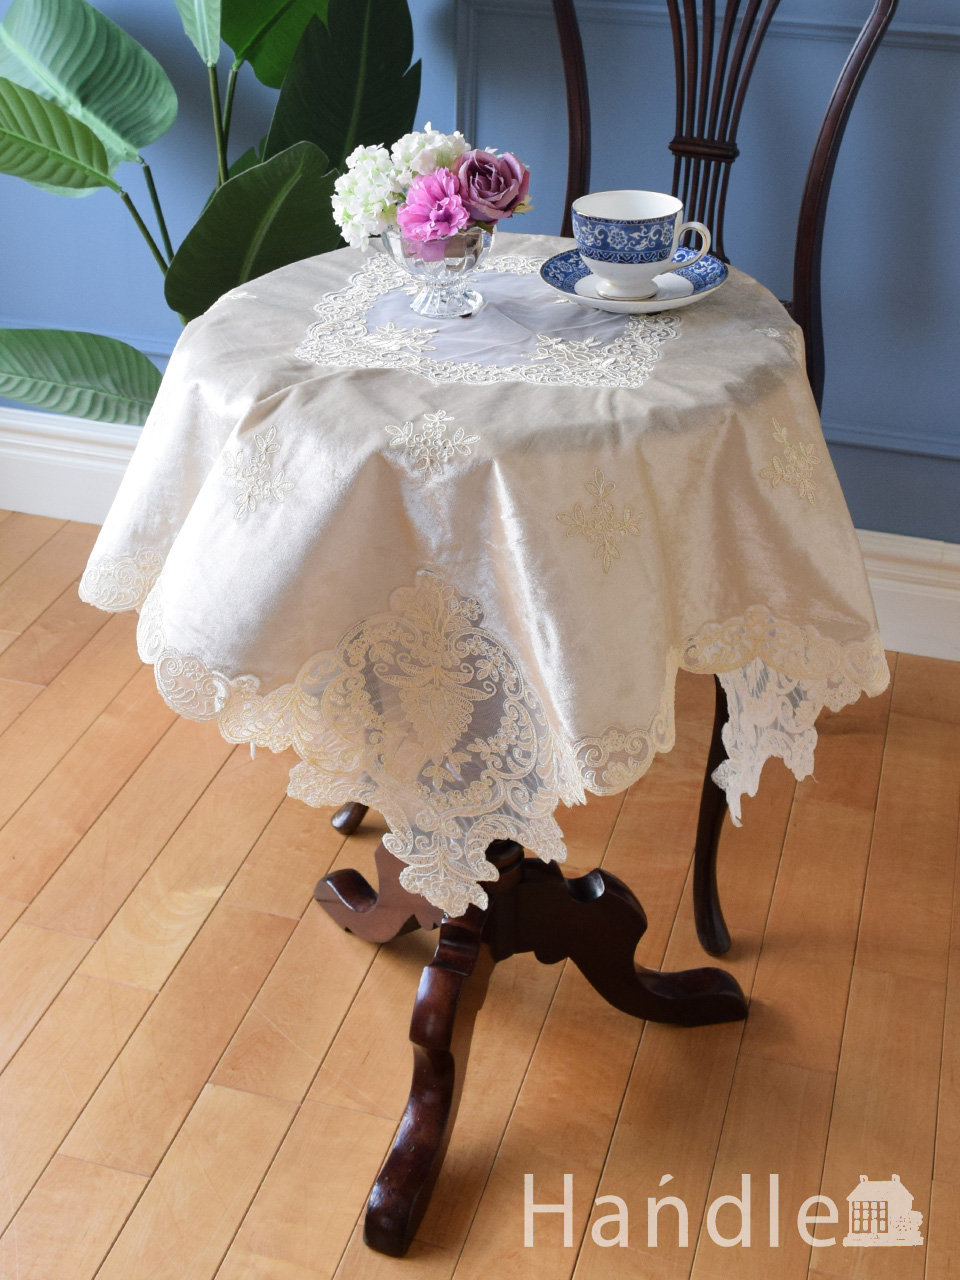 フランス風のおしゃれなテーブルクロス、華やかな刺繍の入った豪華なクロス (n20-122)